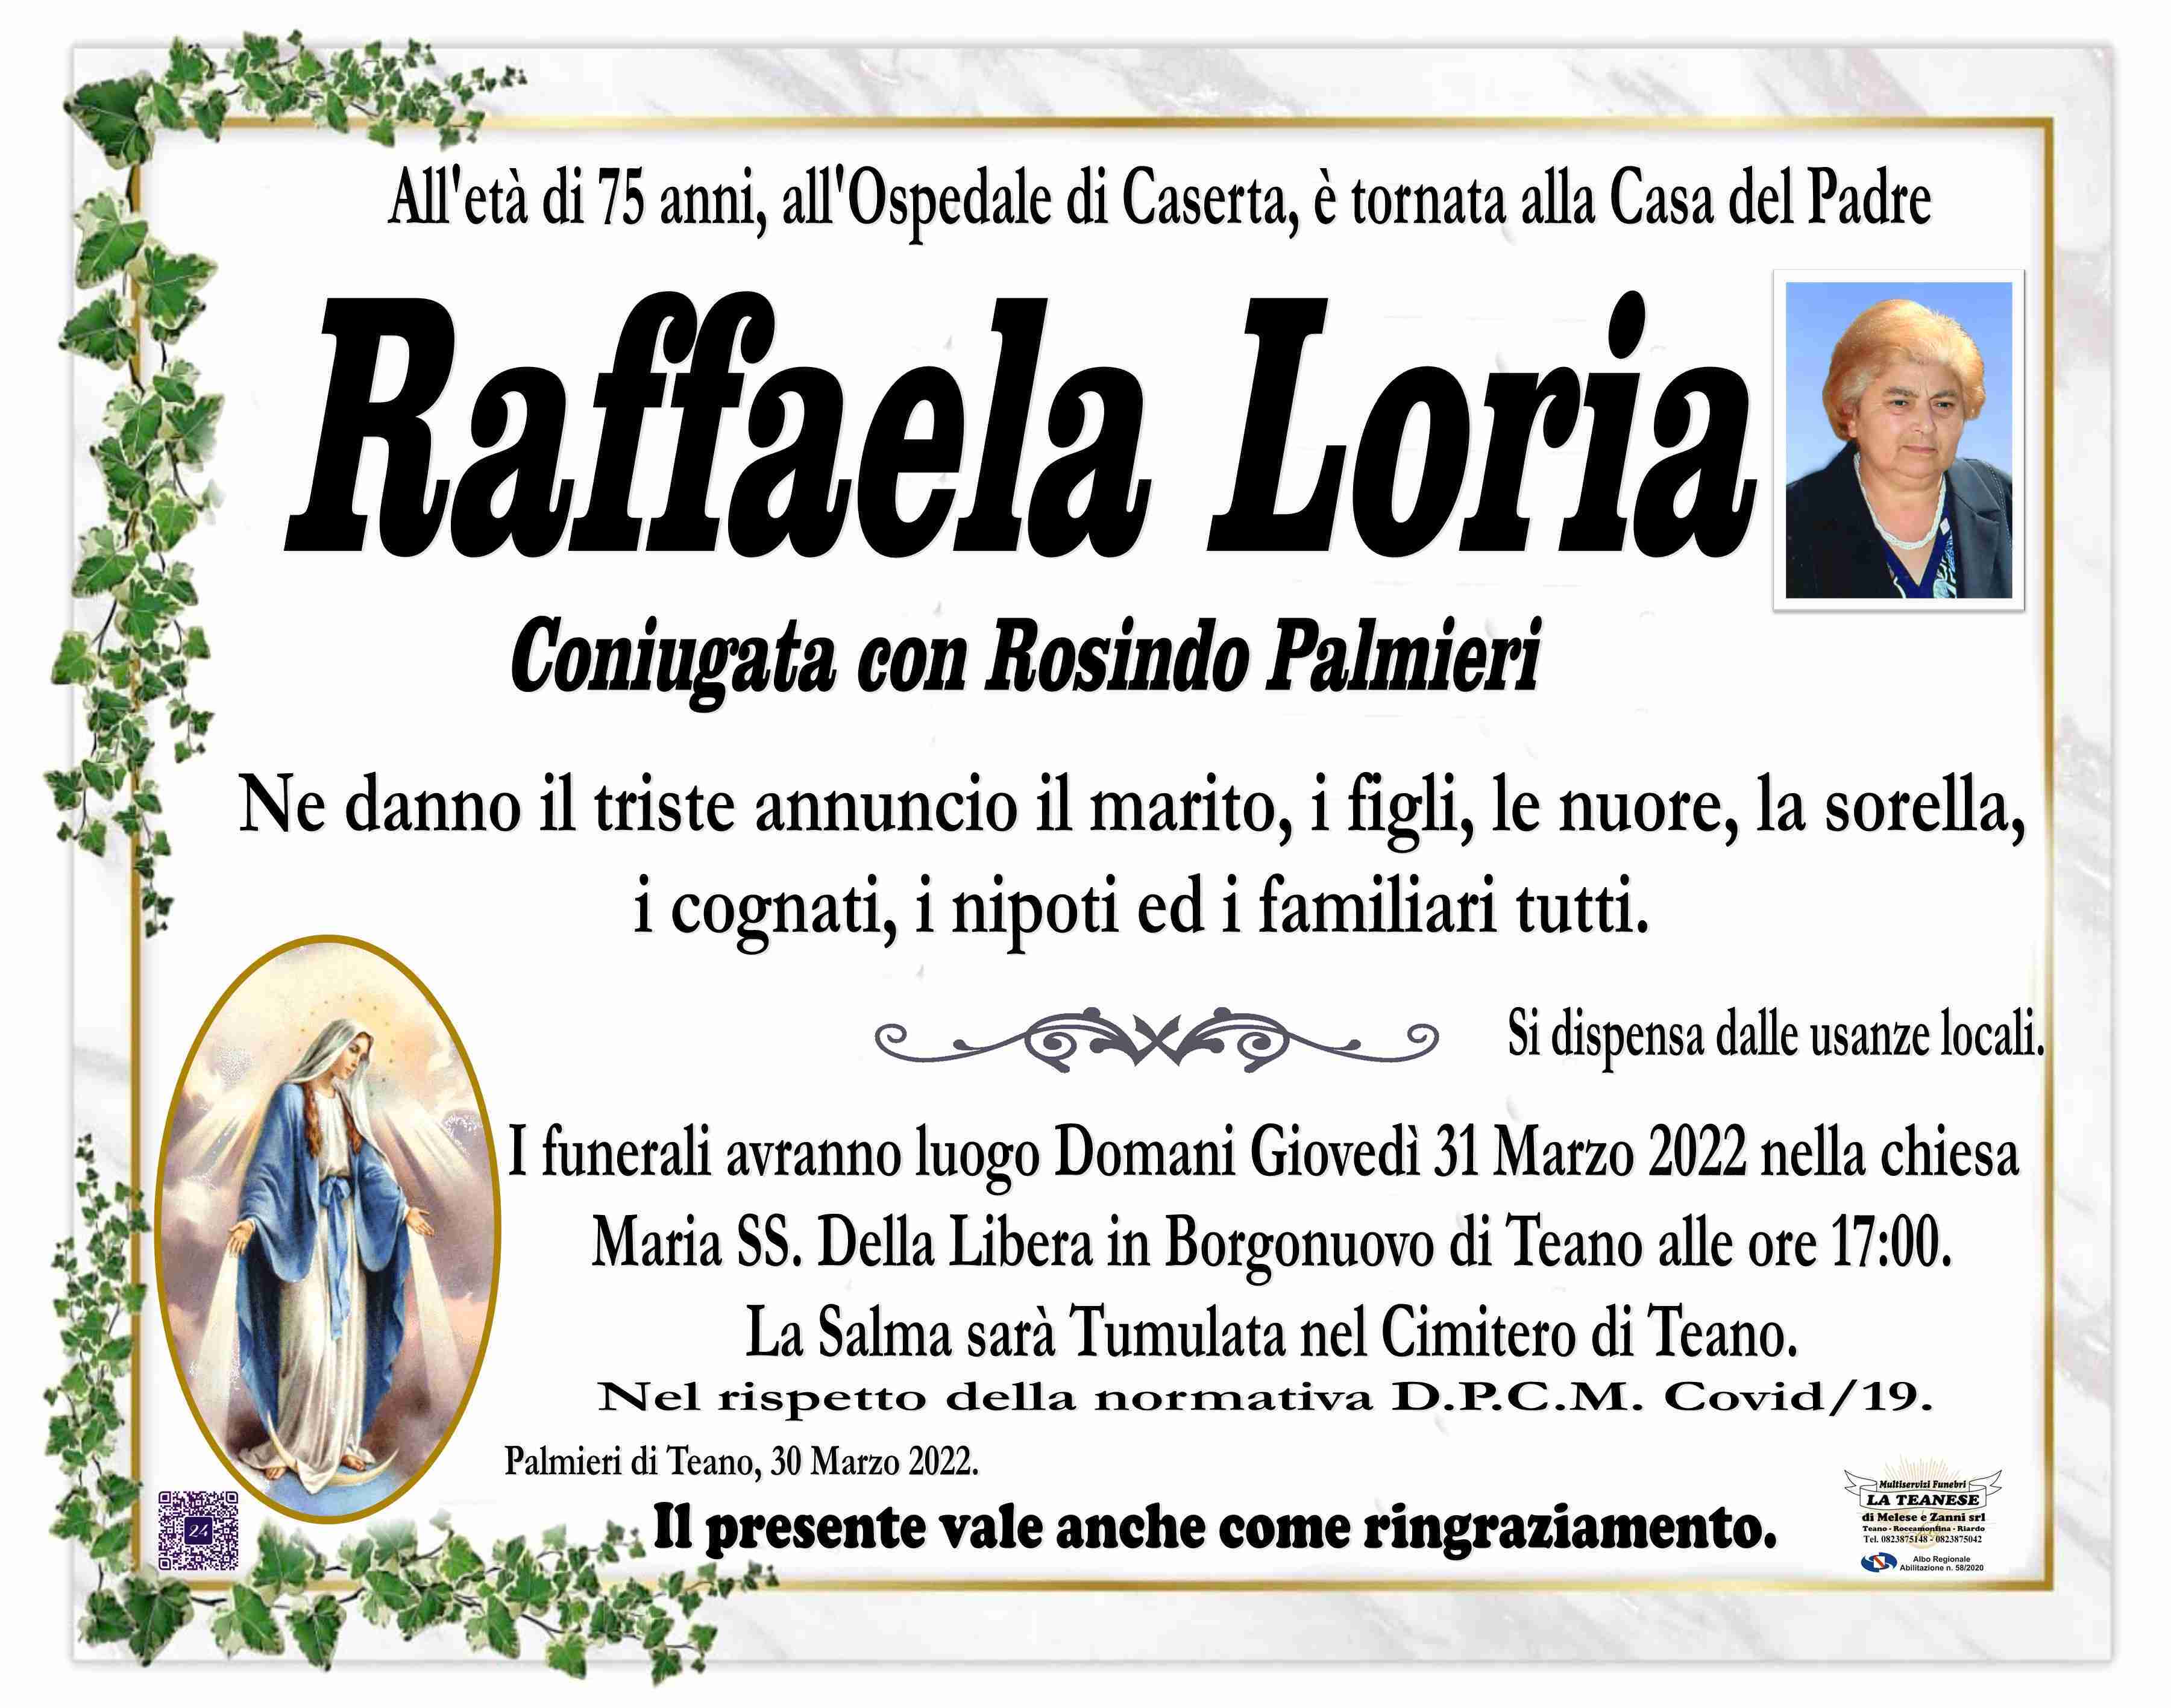 Raffaela Loria